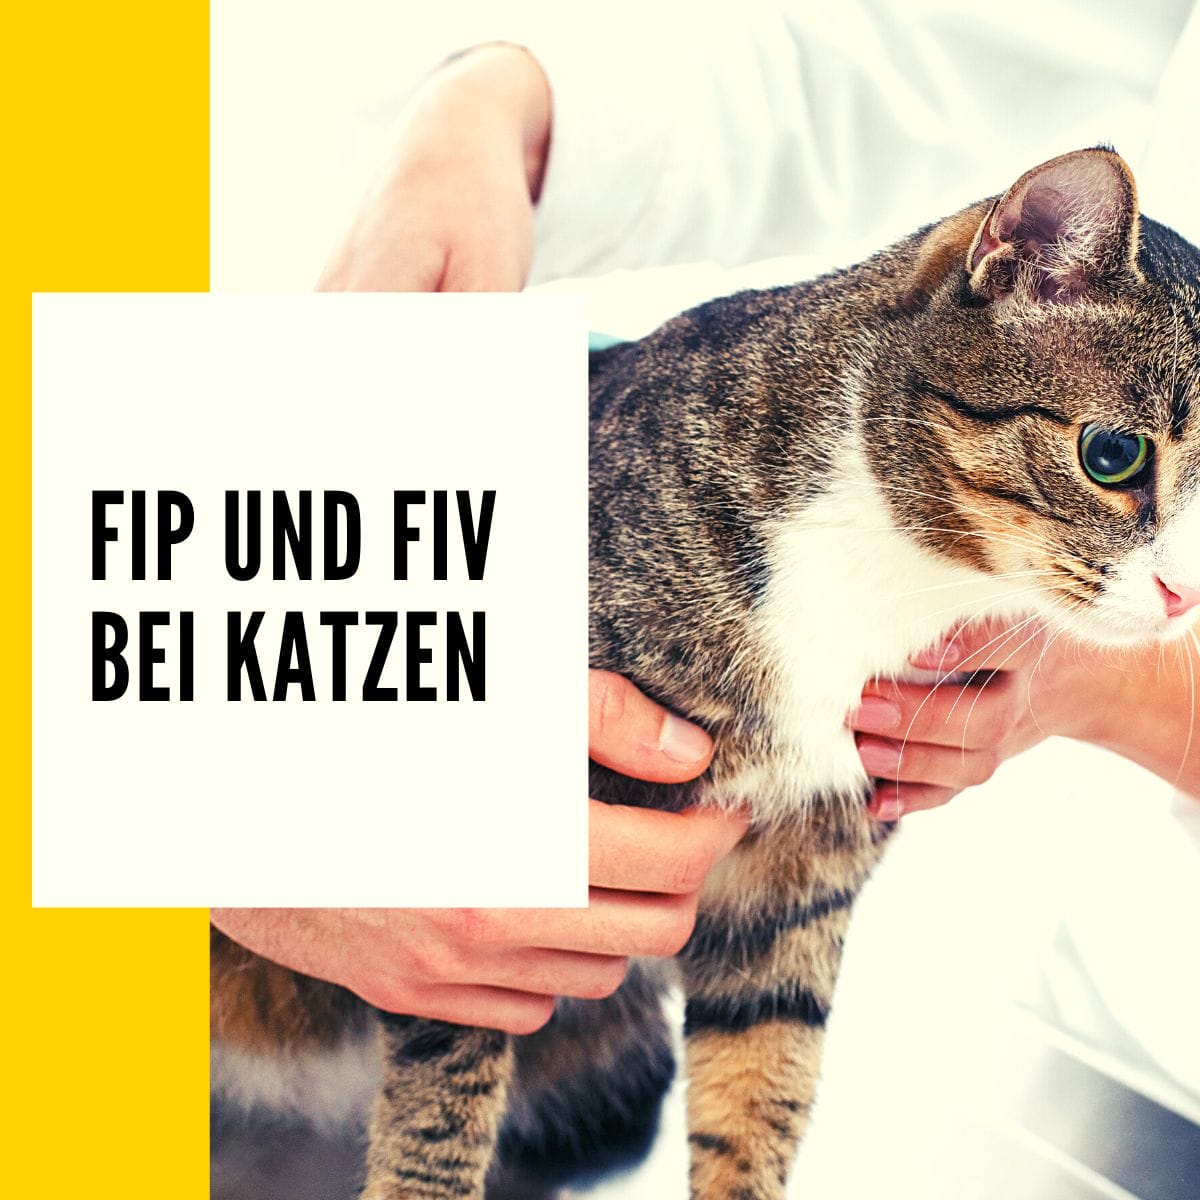 In diesem Artikel geht es um die Krankheiten: FIP und FIV bei Katzen